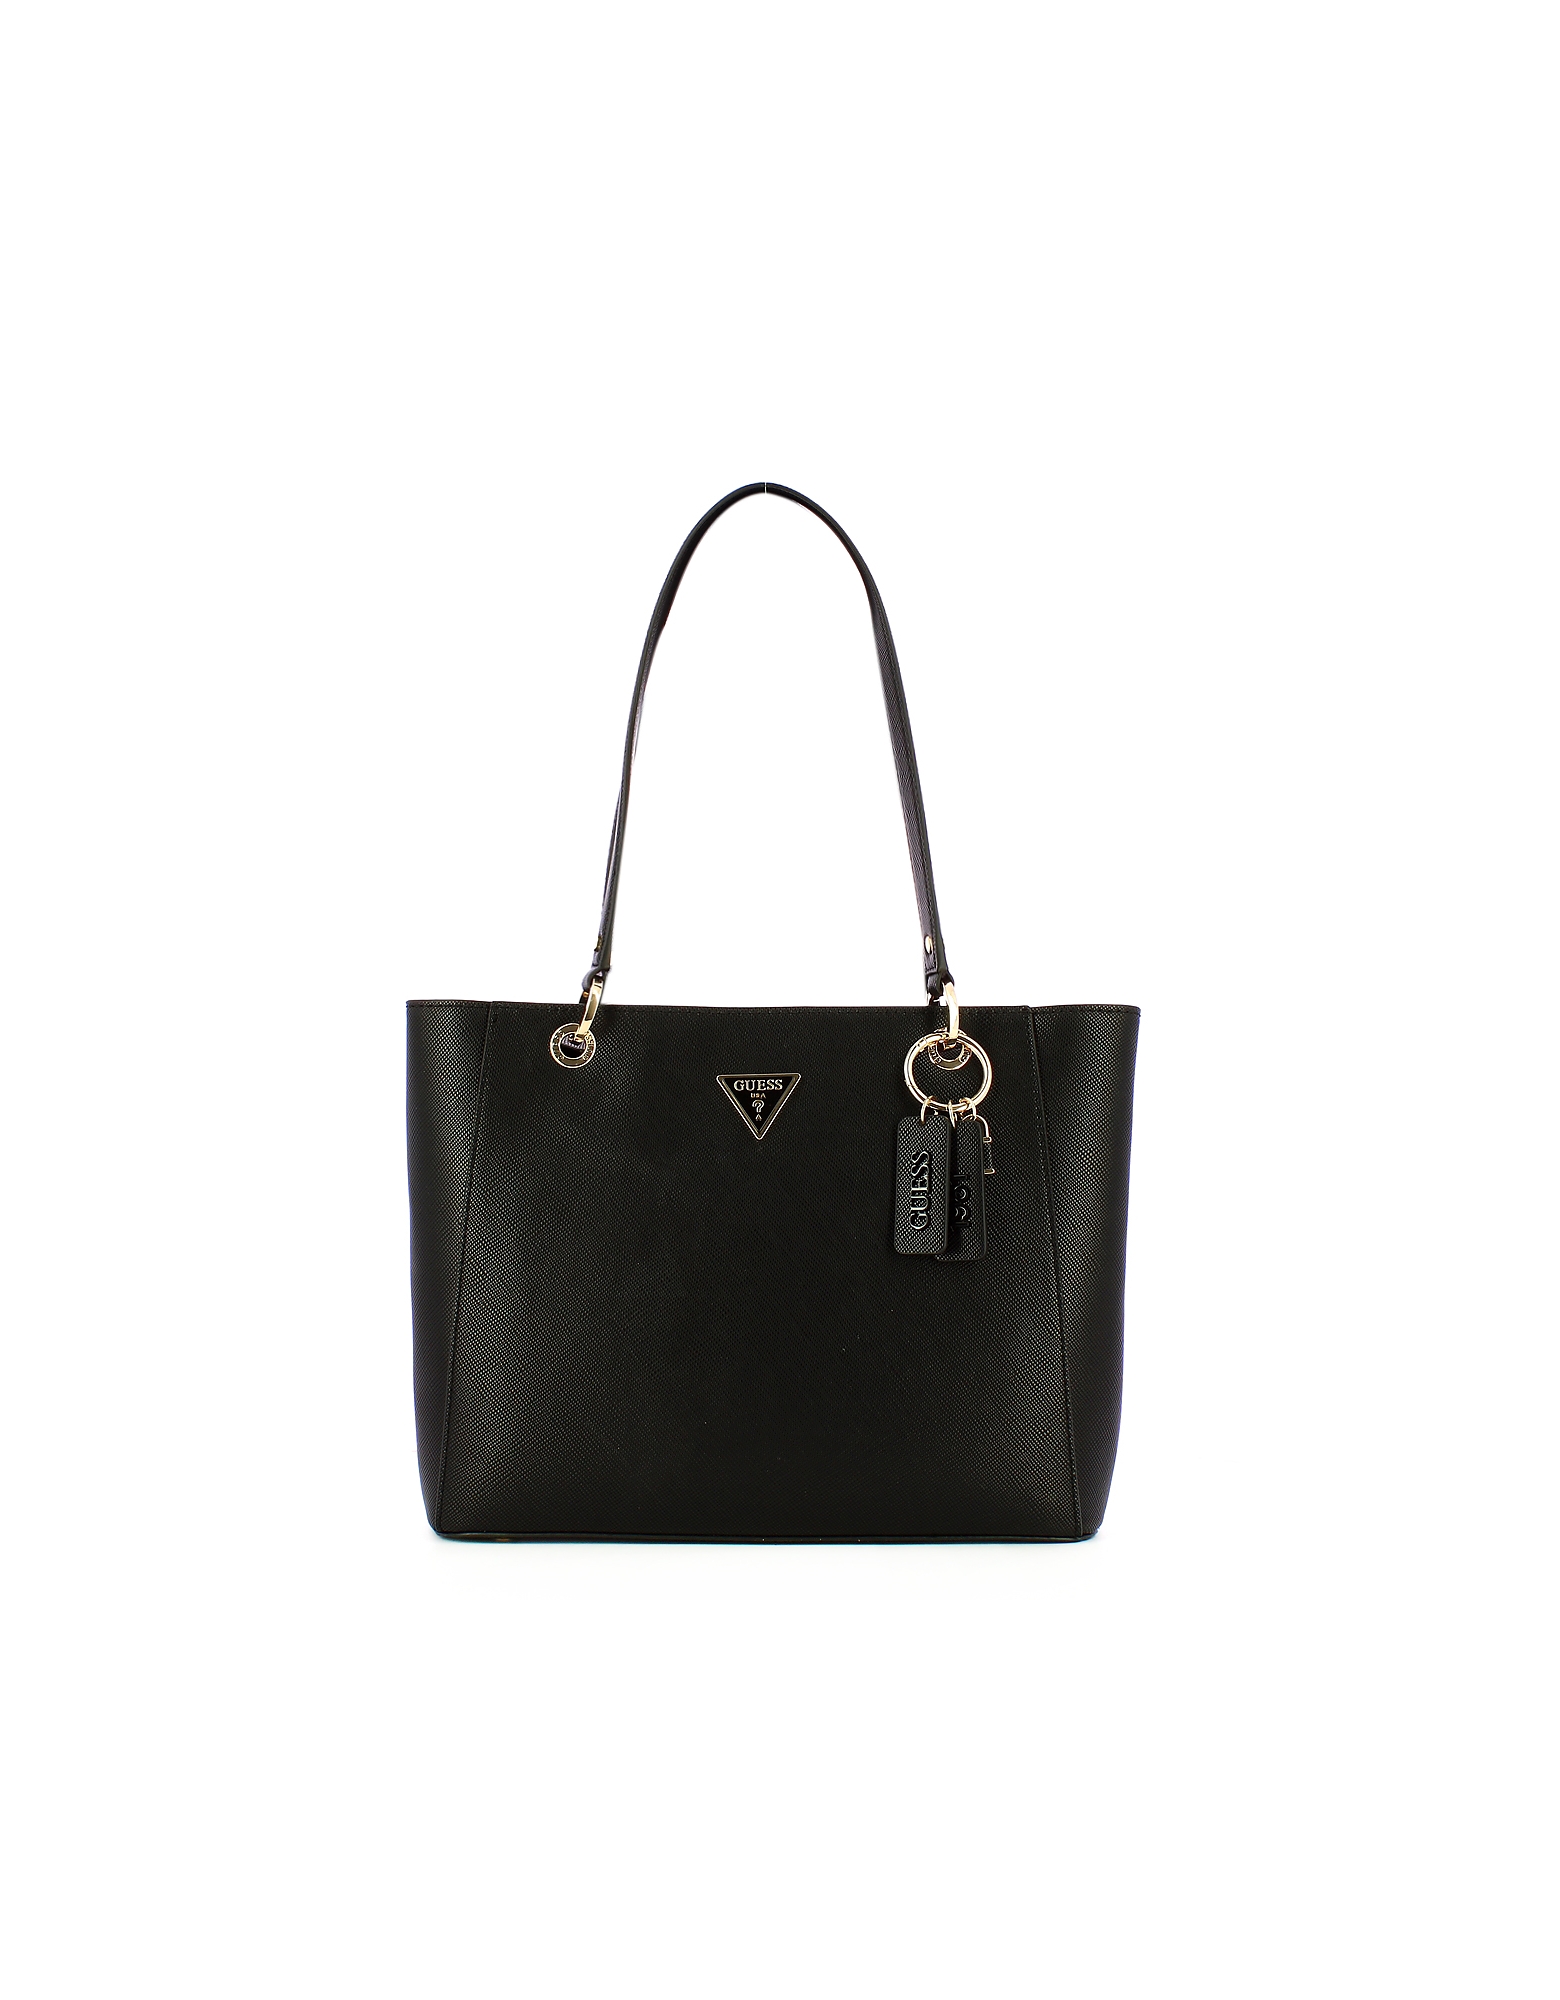 Guess Designer Handbags Women's Bag In Black